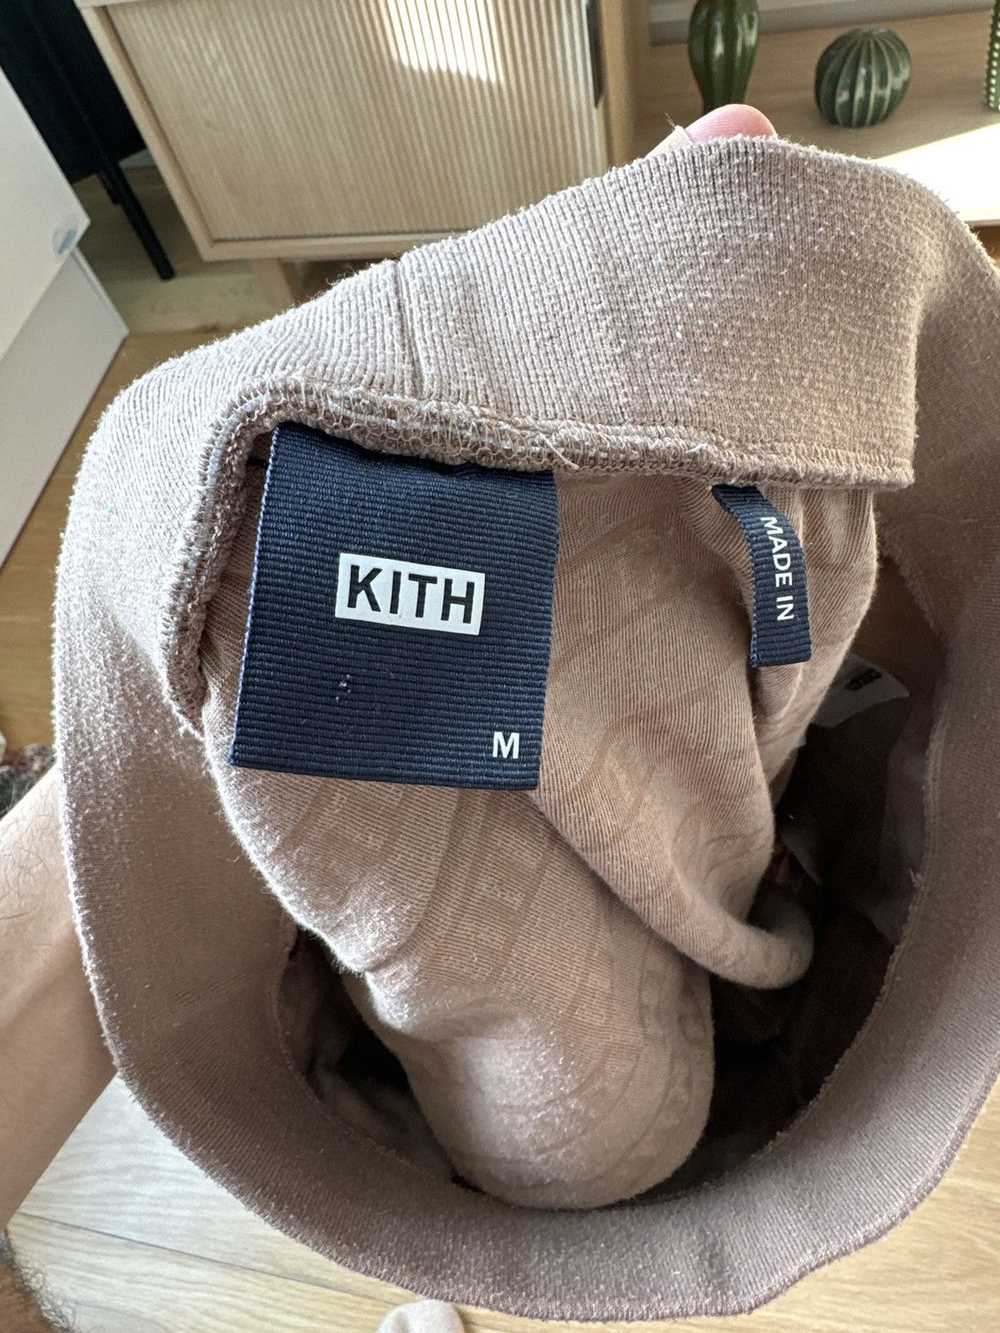 Kith Kith Terry Cloth Shorts - image 3